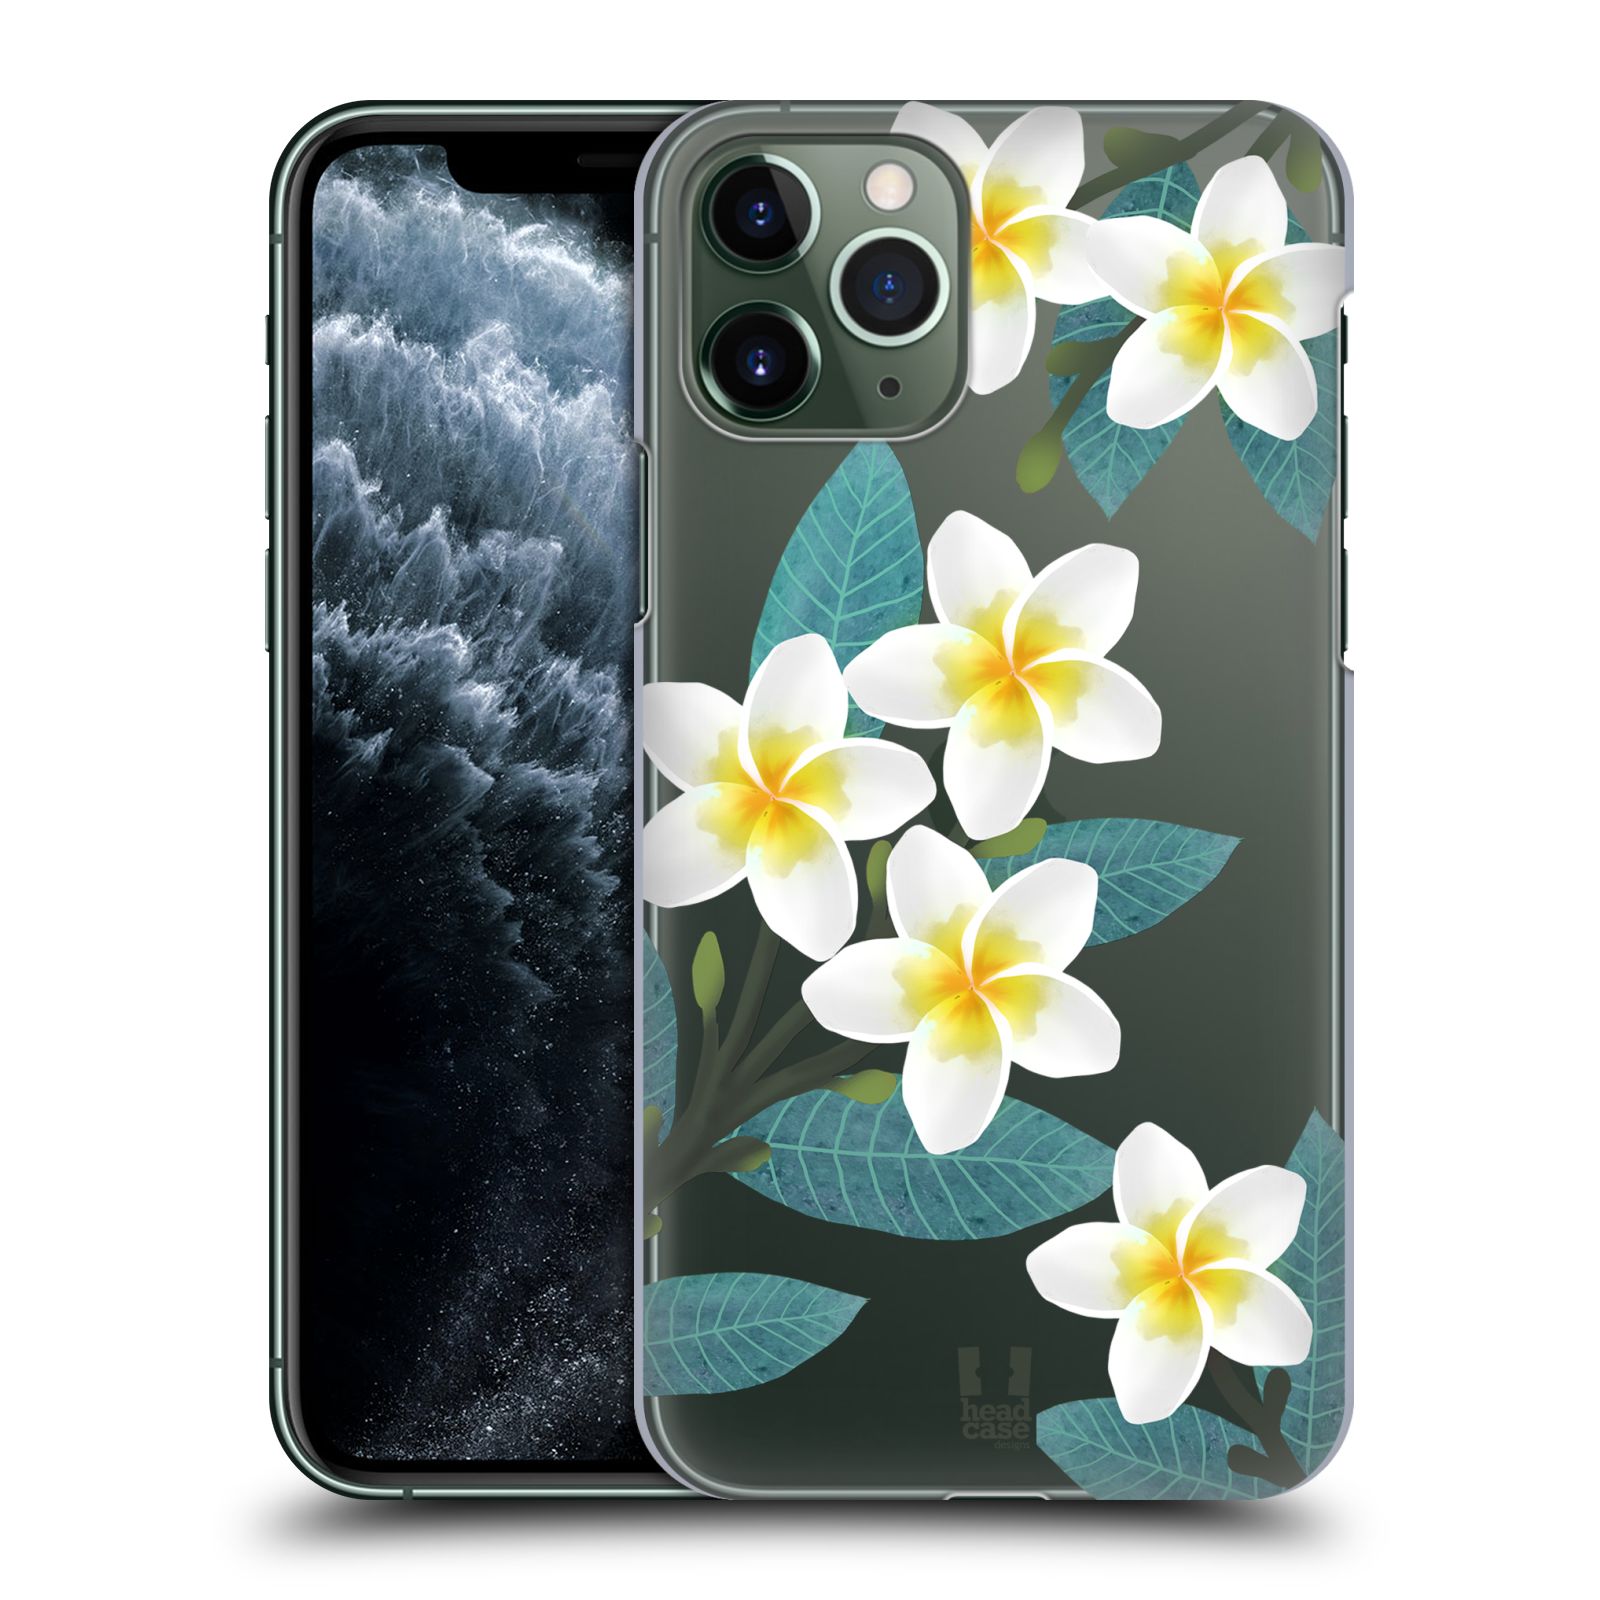 Pouzdro na mobil Apple Iphone 11 PRO - HEAD CASE - květinové vzory Plumérie